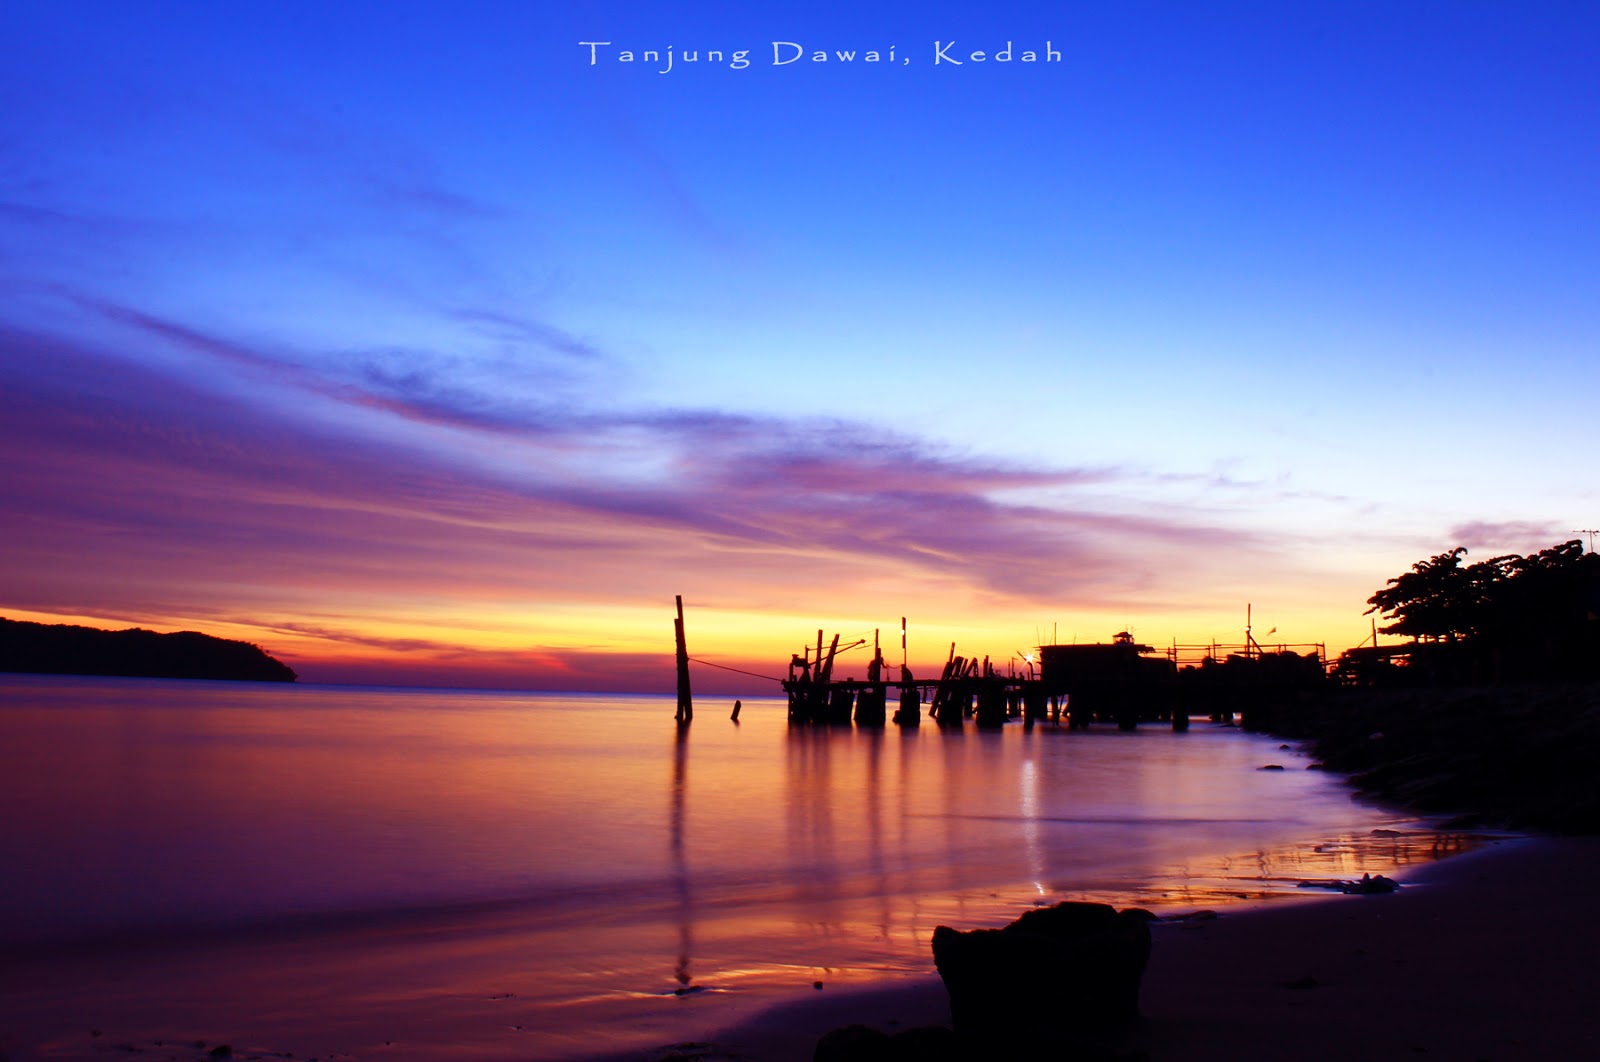 Tanjung Dawai